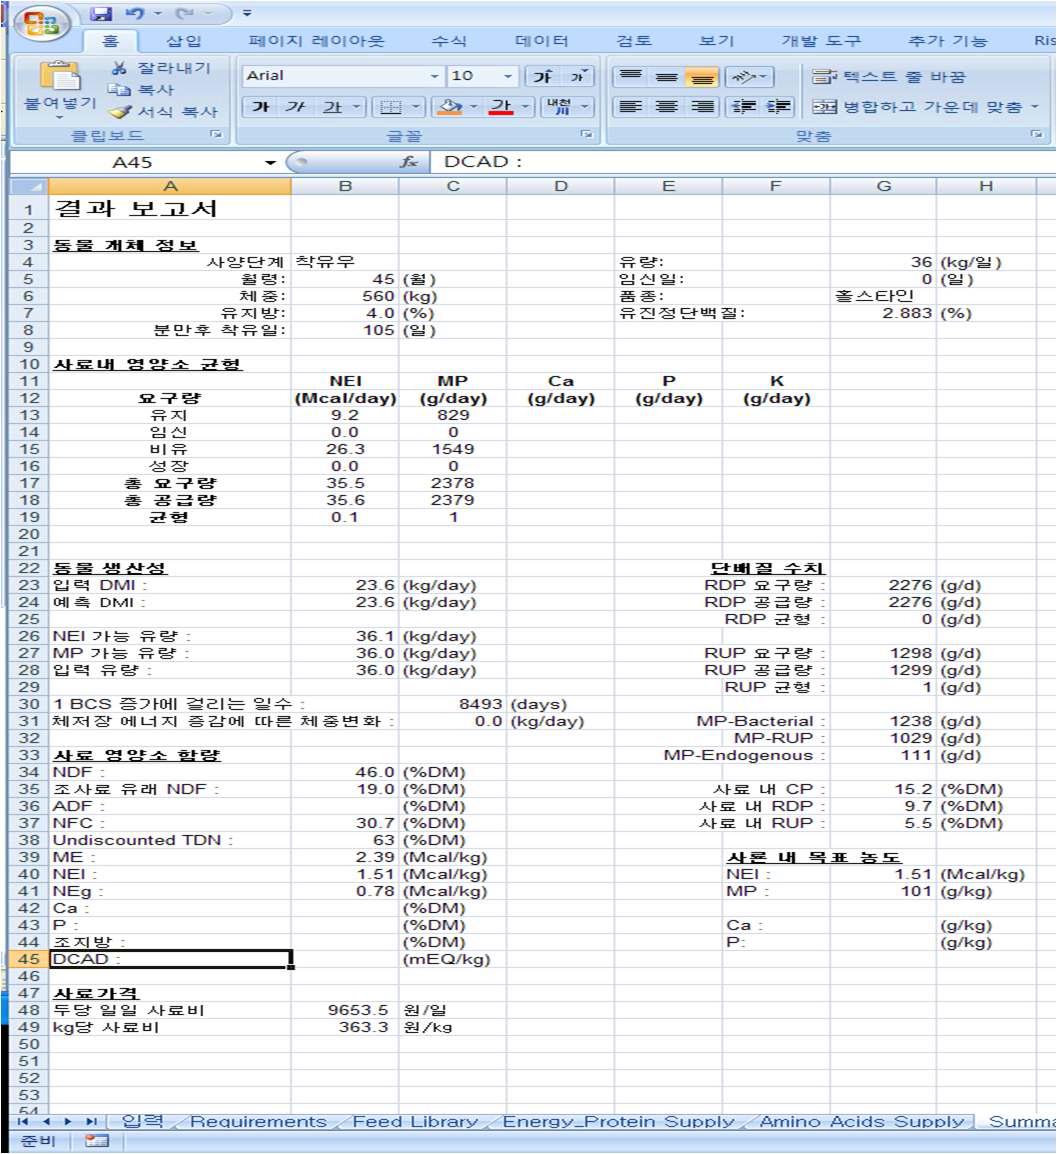 엑셀로 프로그램 코딩이 완성된 NRC 젖소 (2001)의 결과 보고서 화면